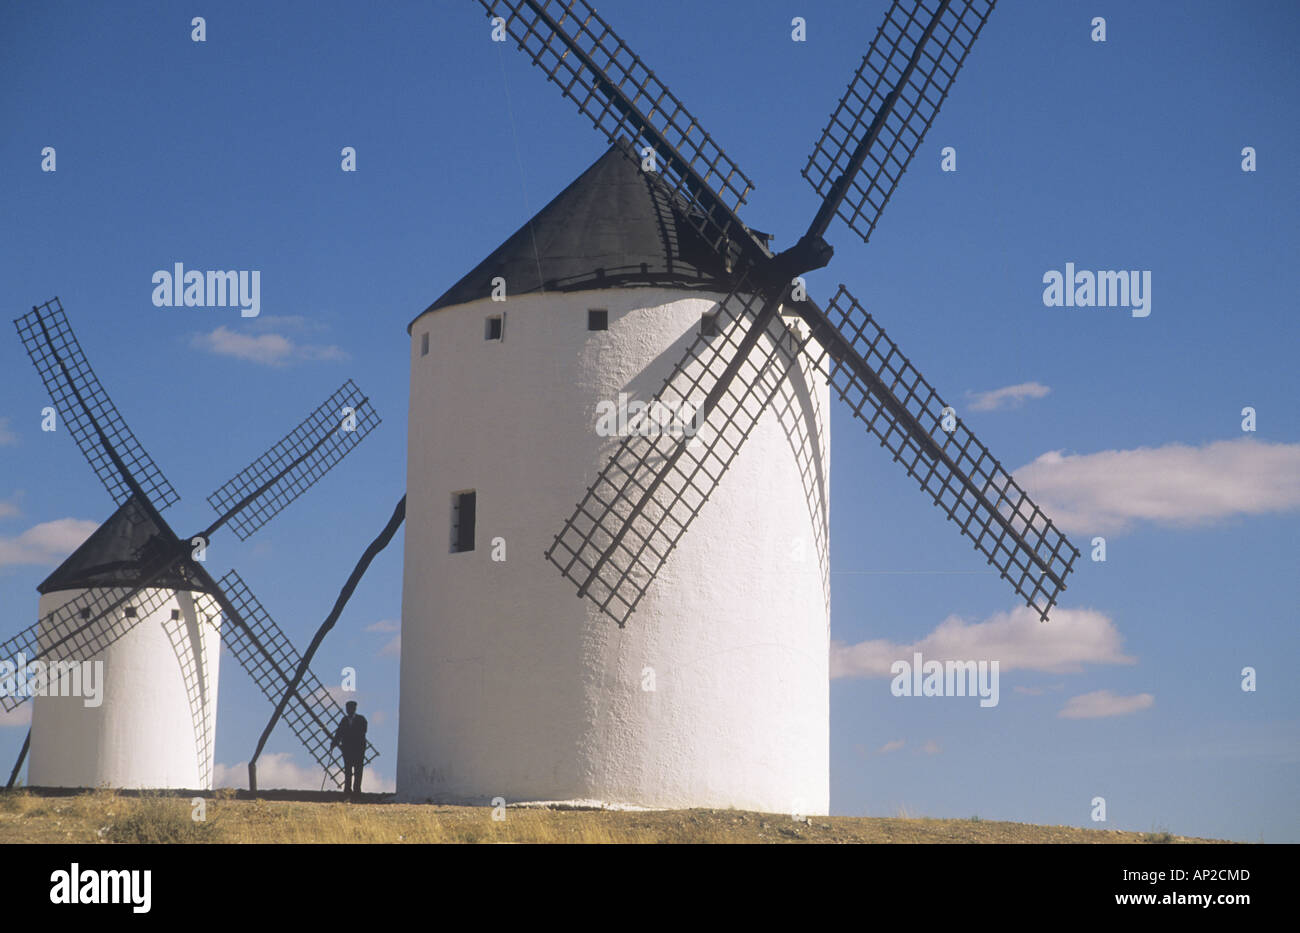 Les moulins à vent, Campo de Criptana, province de Tolède, Castille-La-Manche, Espagne Banque D'Images